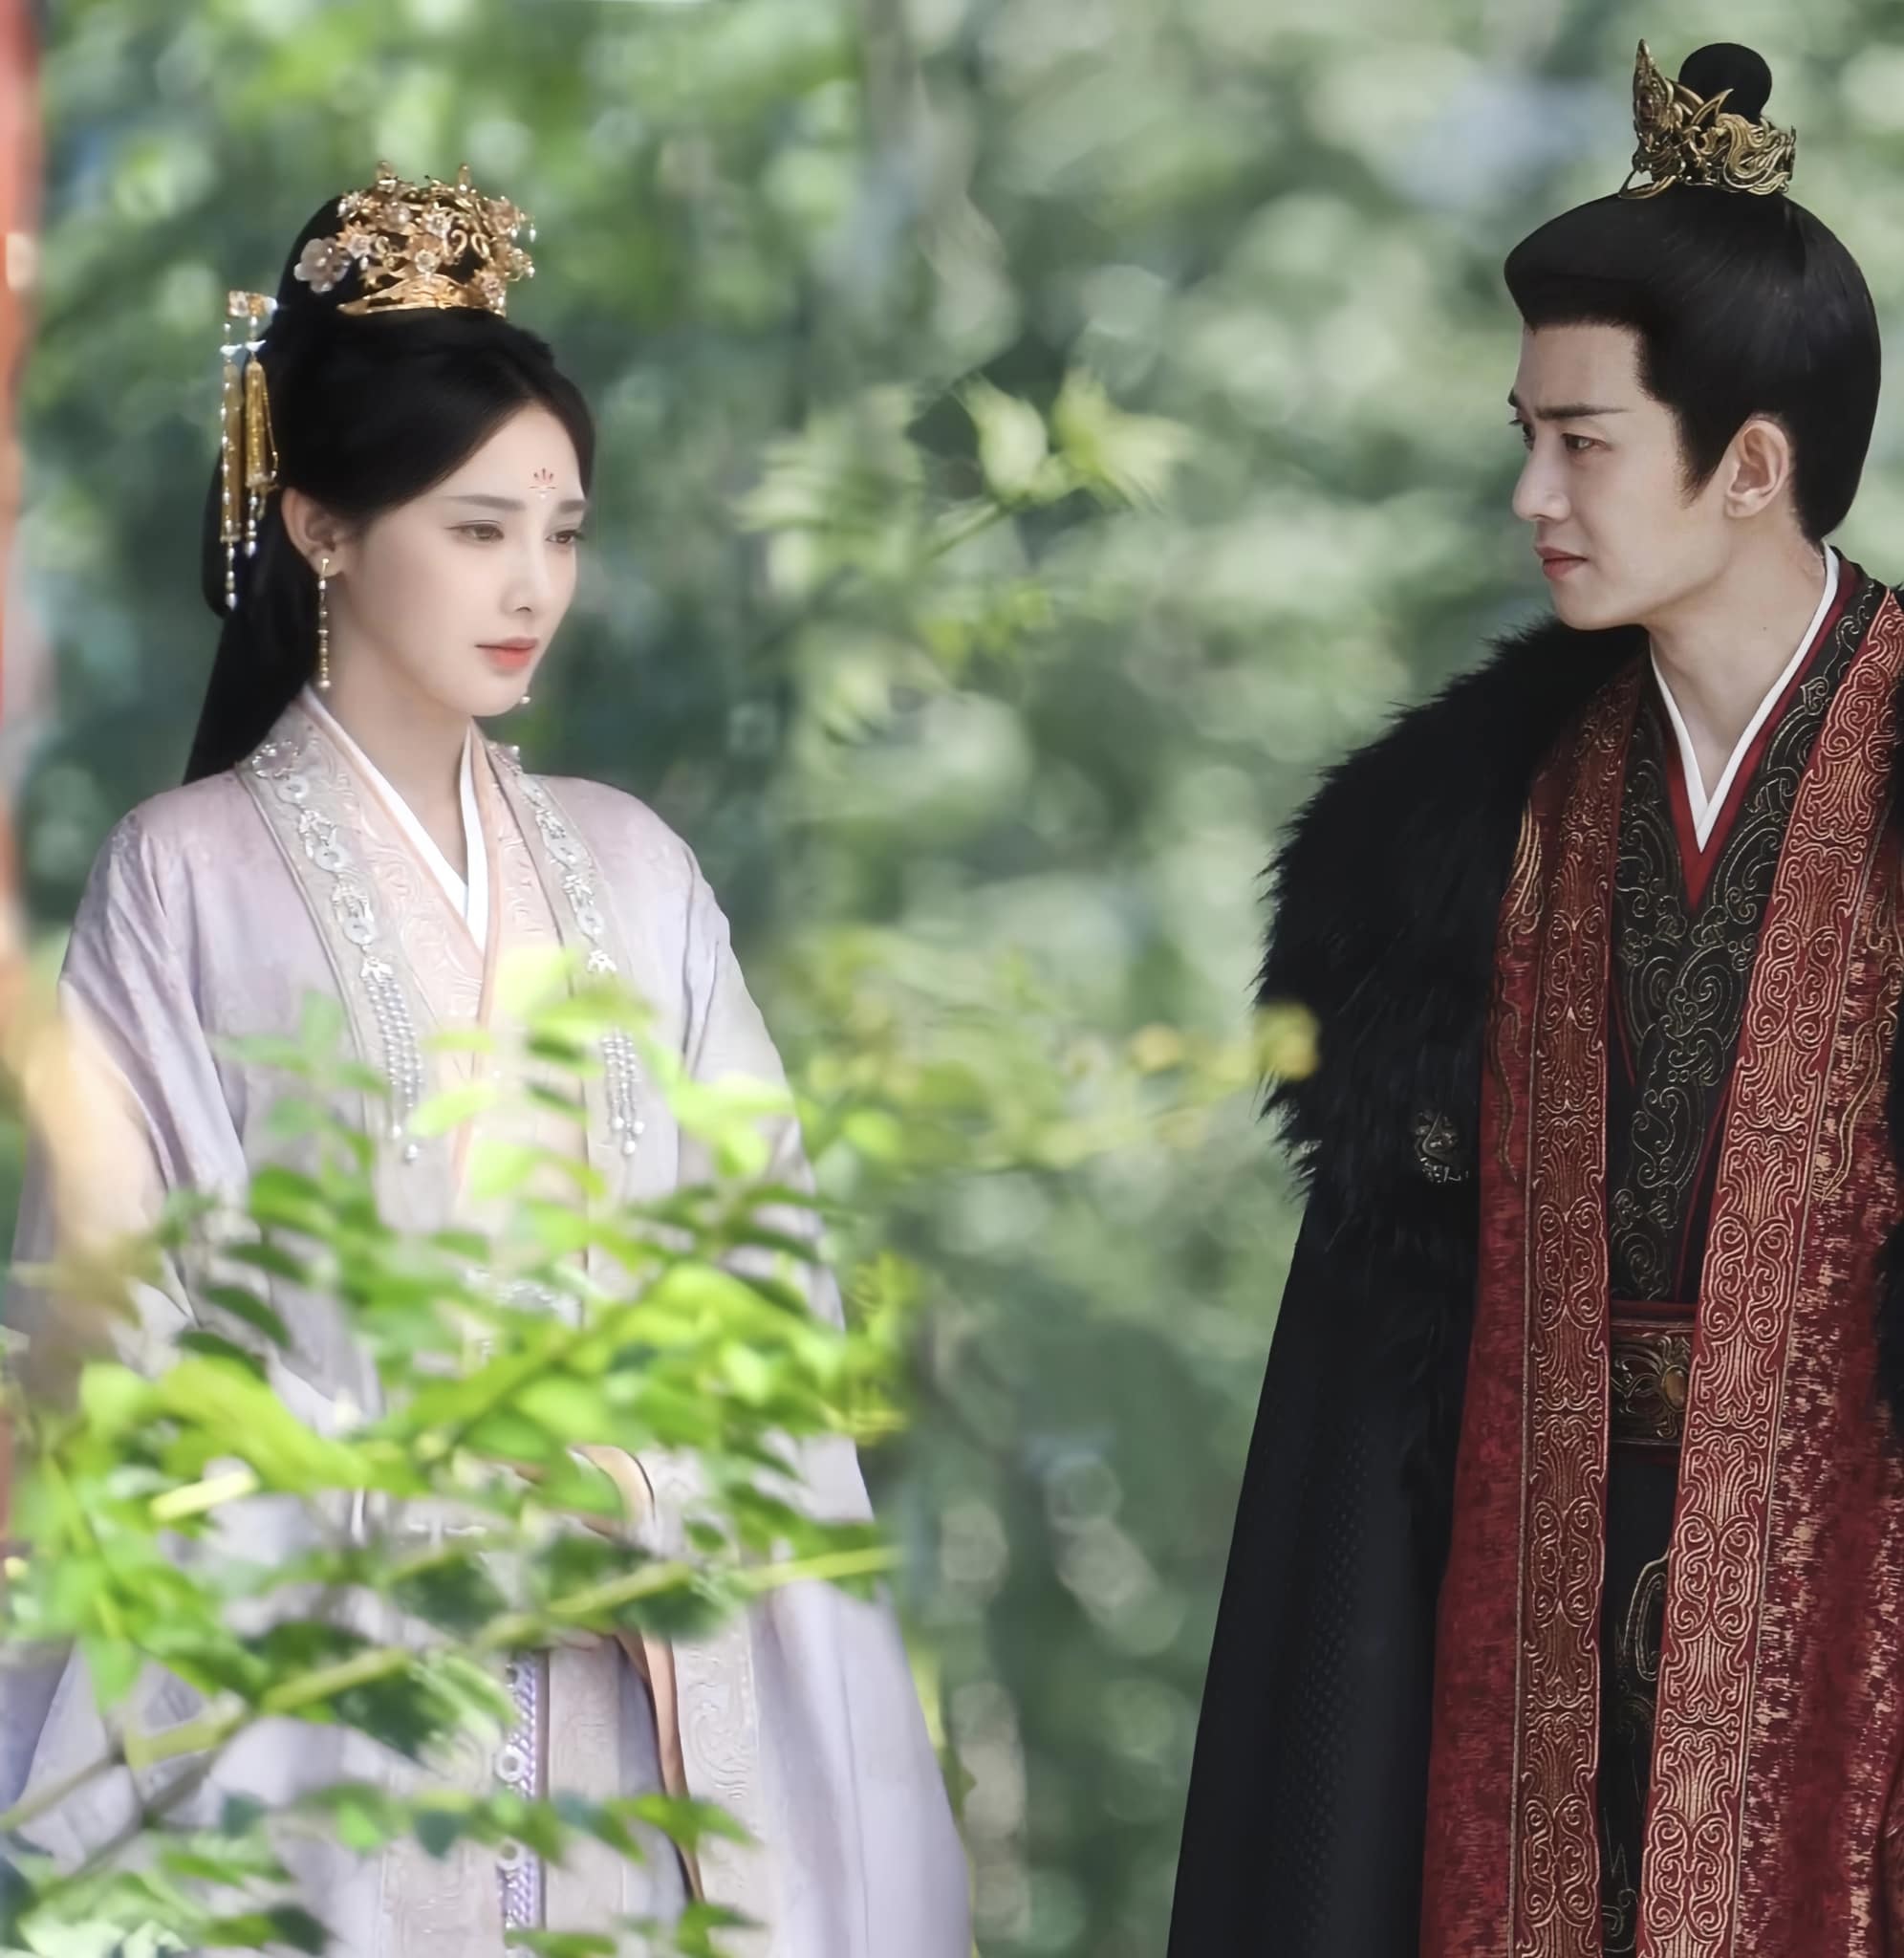 Đây là hoàng hậu đẹp nhất màn ảnh Hoa ngữ hiện tại, nhan sắc trời sinh để đóng cổ trang- Ảnh 2.